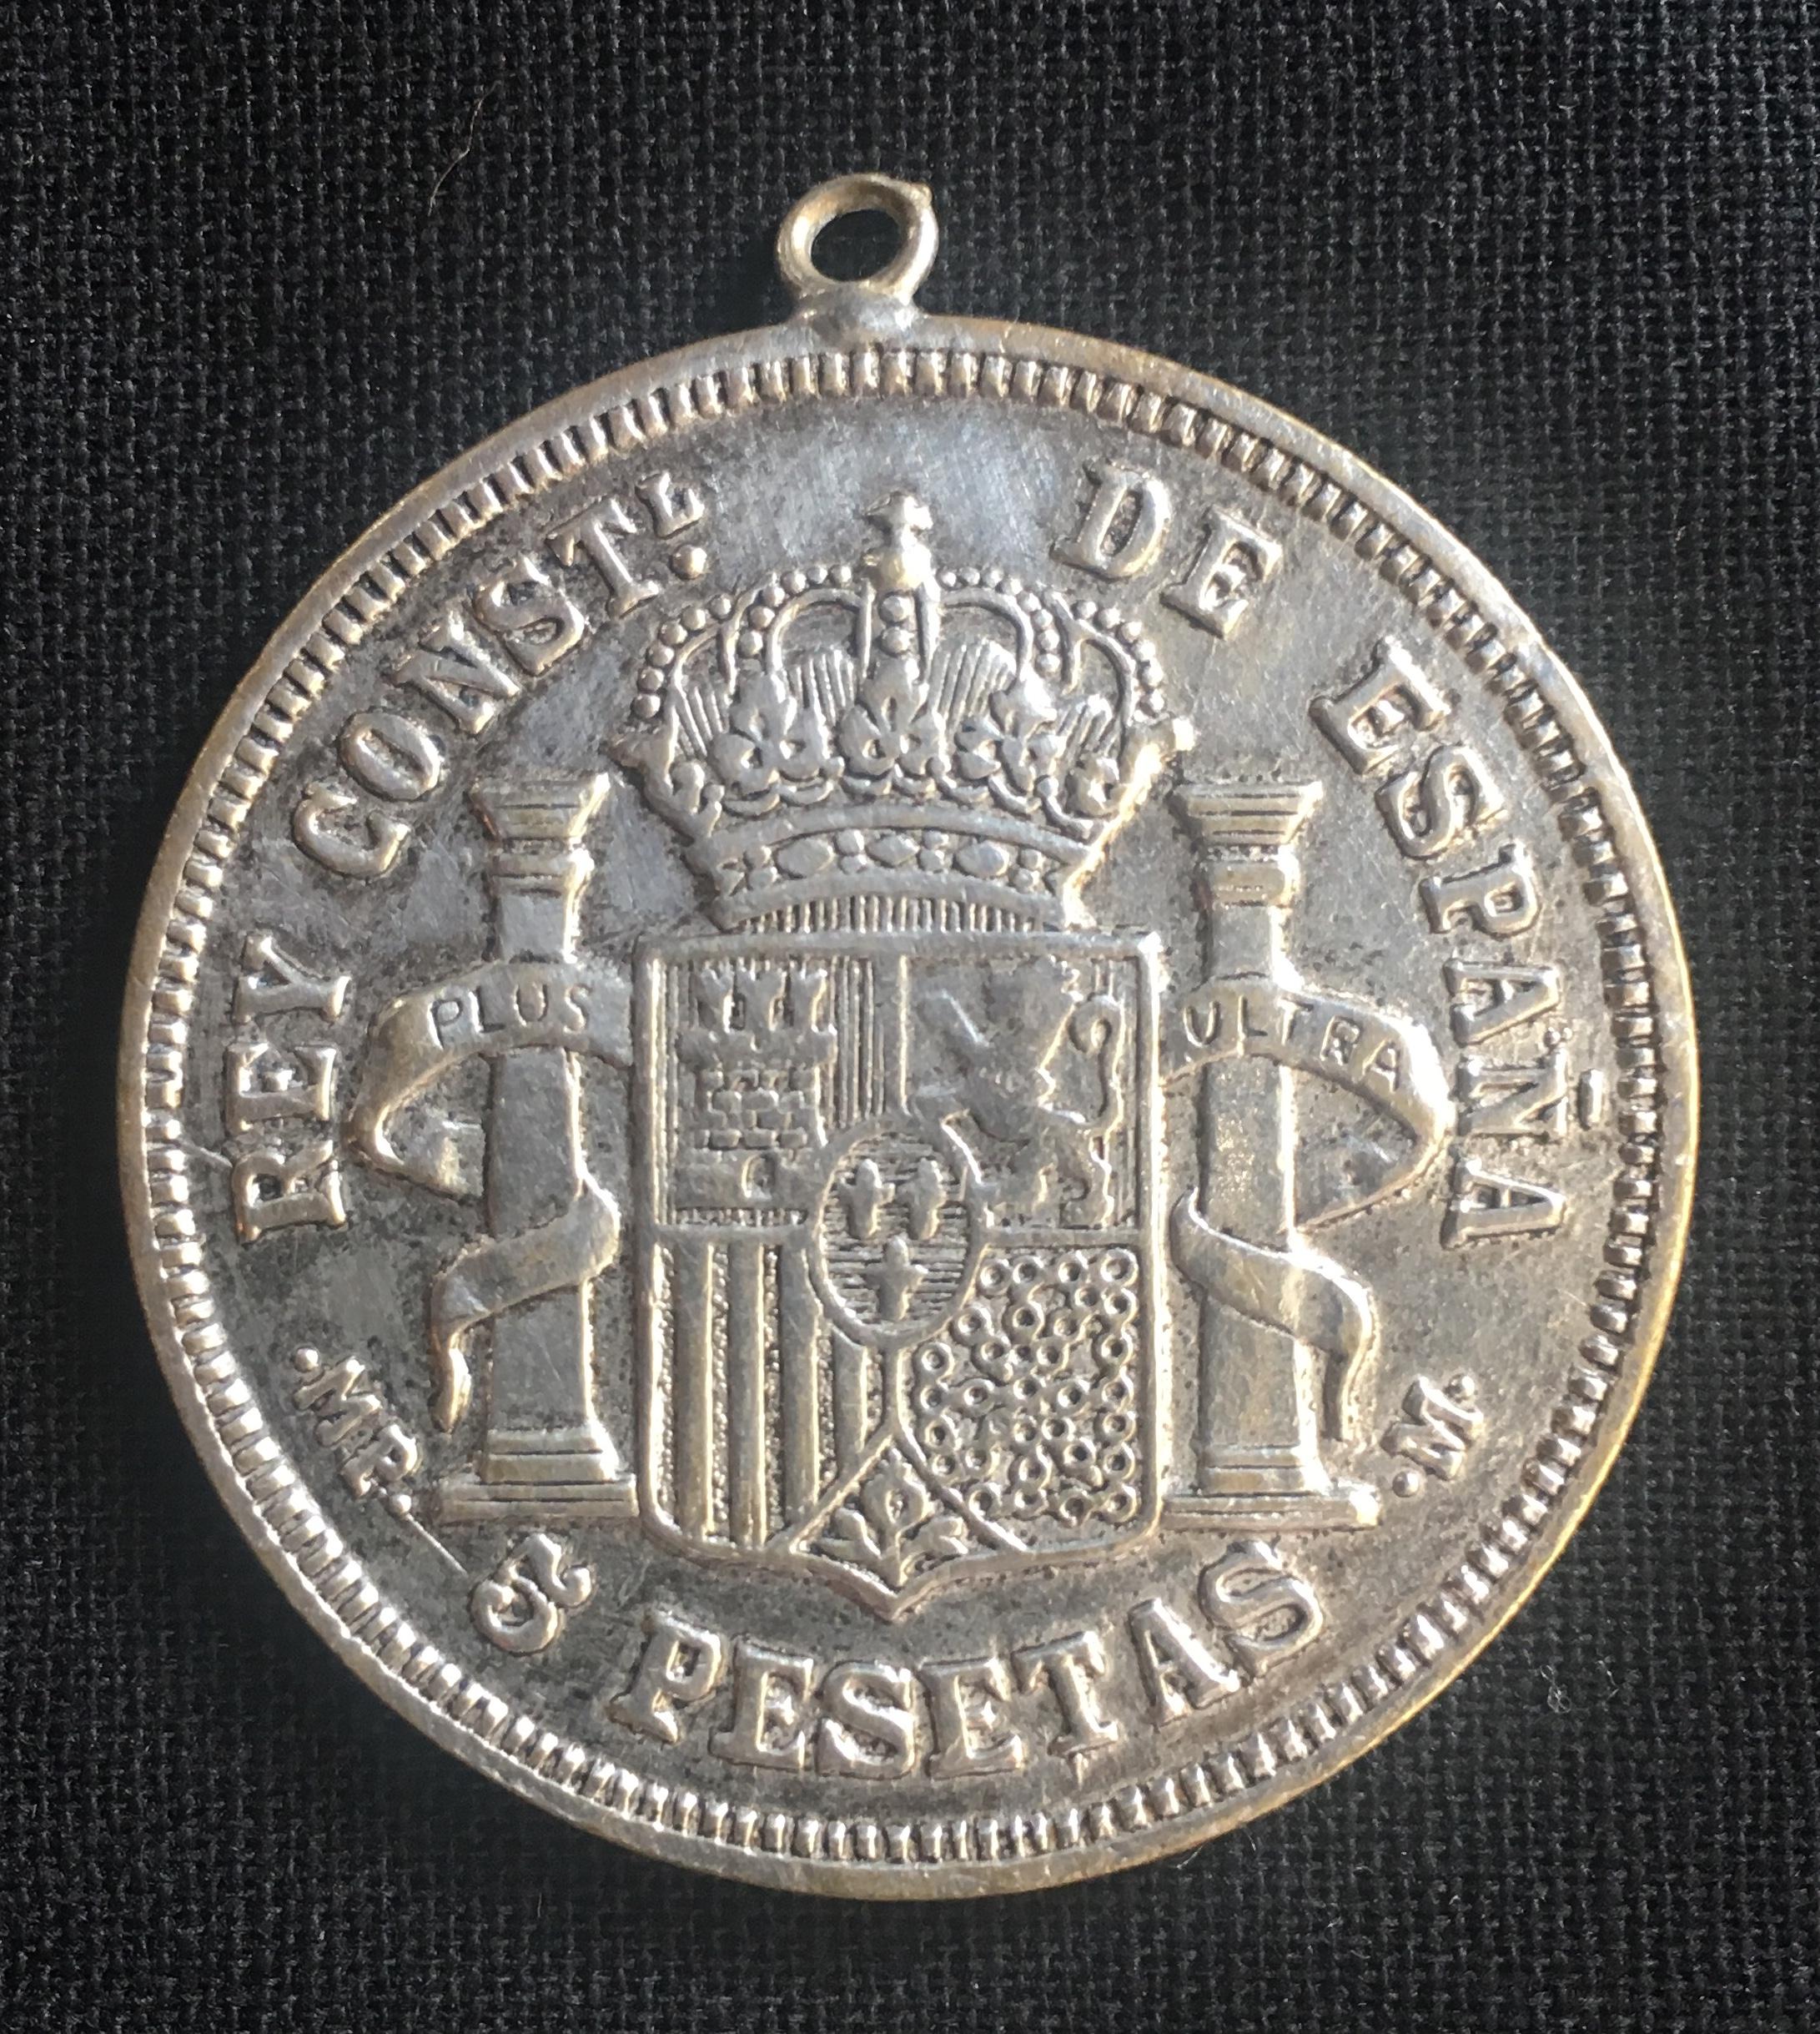 Feine spanische Münze, die zuvor an einem Silberarmband befestigt war (separat erhältlich).
Spanien, Alphonse XII (1874-1885), 5 Peseta, 1882, 

Jahr: 1882
Metall: Silber.